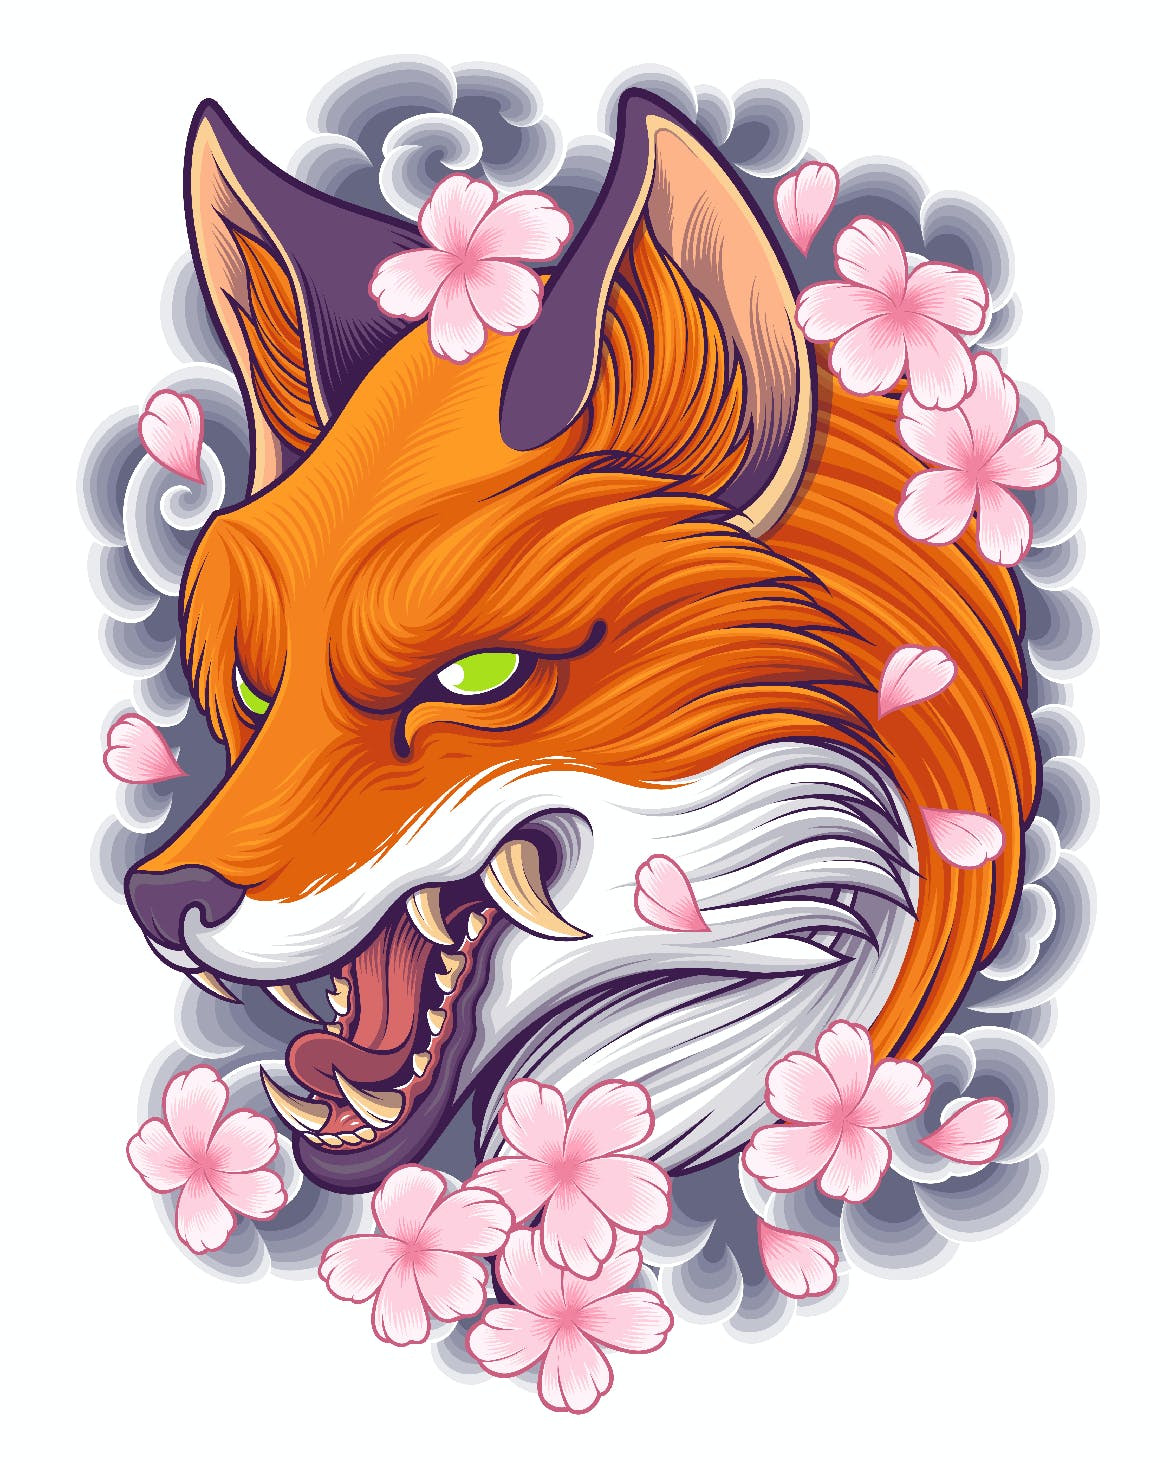 日本风格狐狸纹身图案 Japanese Fox Tattoo Design-2